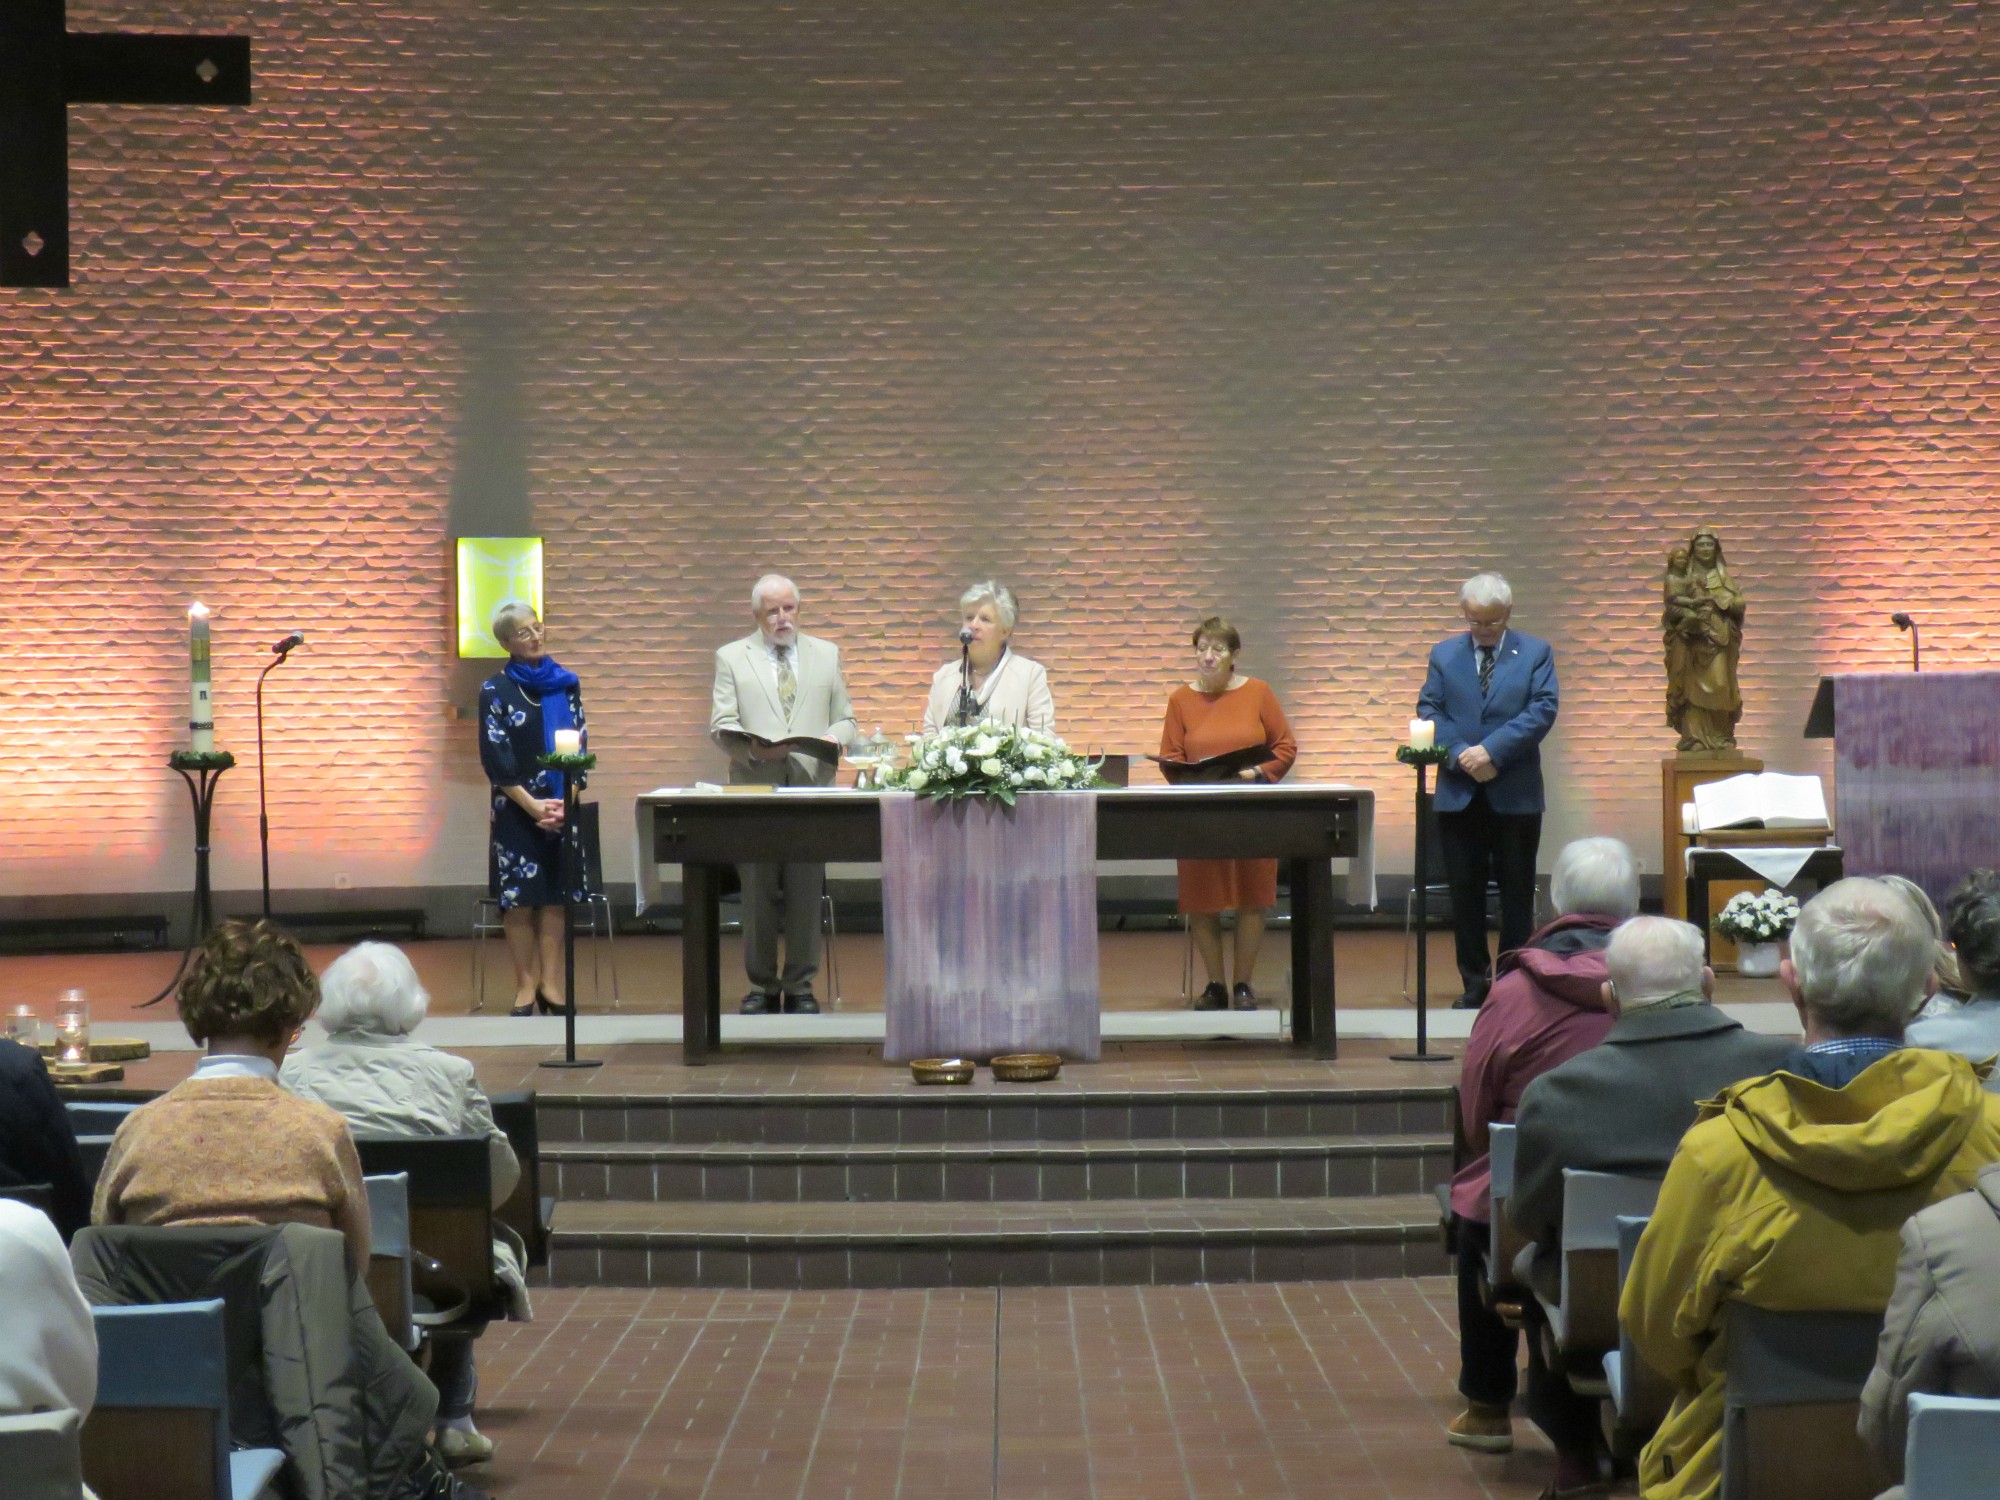 Engagementsviering op de eerste zondag van de advent | Sint-Anna-ten-Drieënkerk, Antwerpen Linkeroever